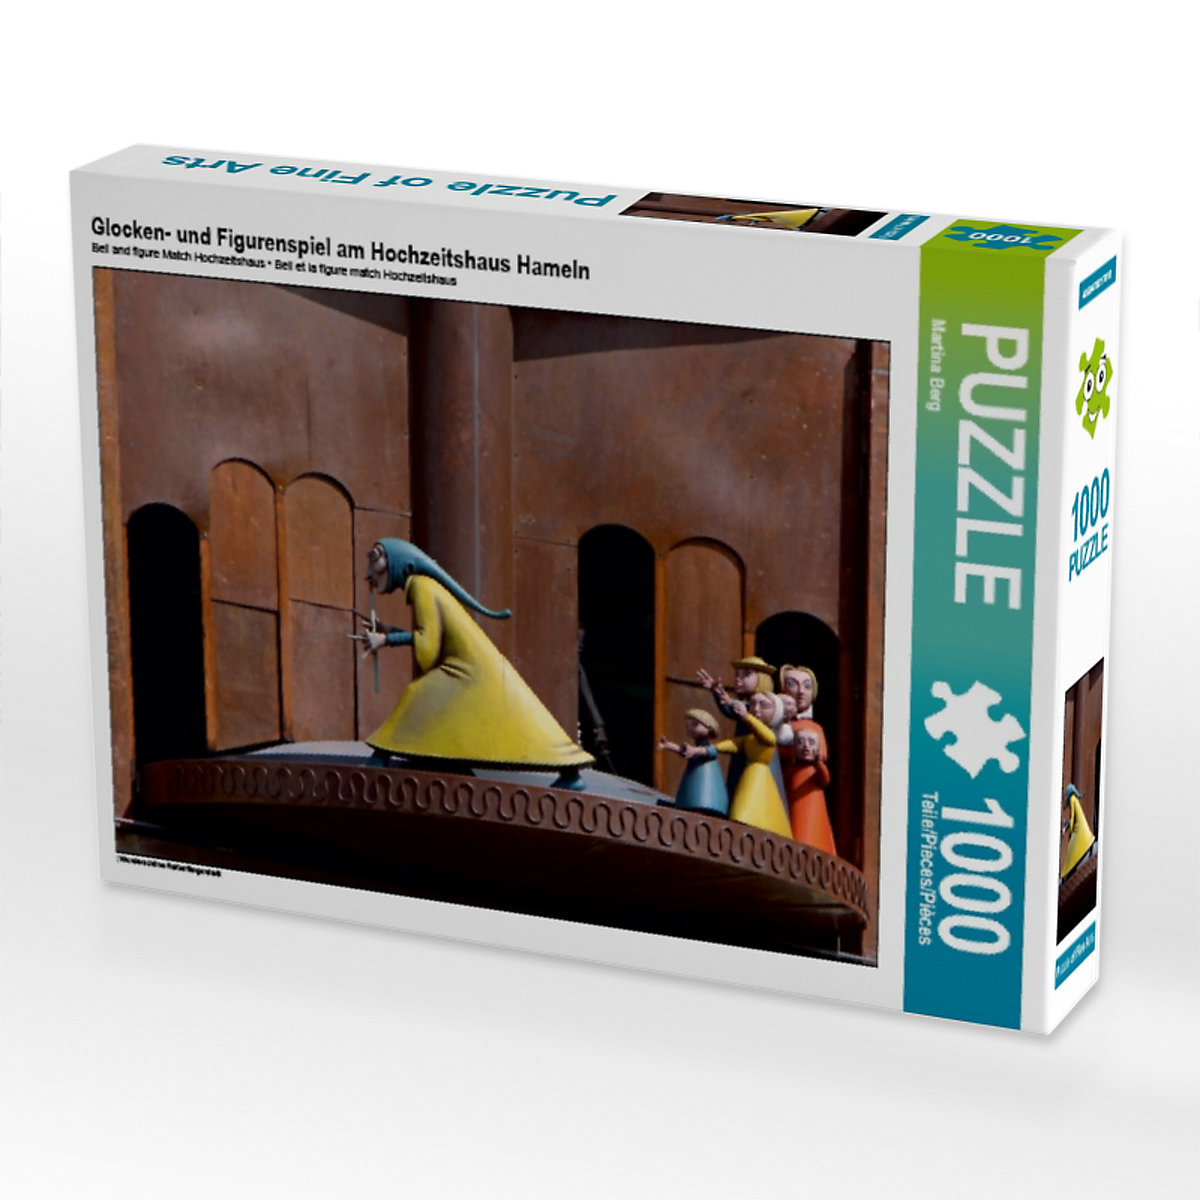 CALVENDO® Puzzle CALVENDO Puzzle Glocken- und Figurenspiel am Hochzeitshaus Hameln 1000 Teile Foto-Puzzle für glückliche Stunden